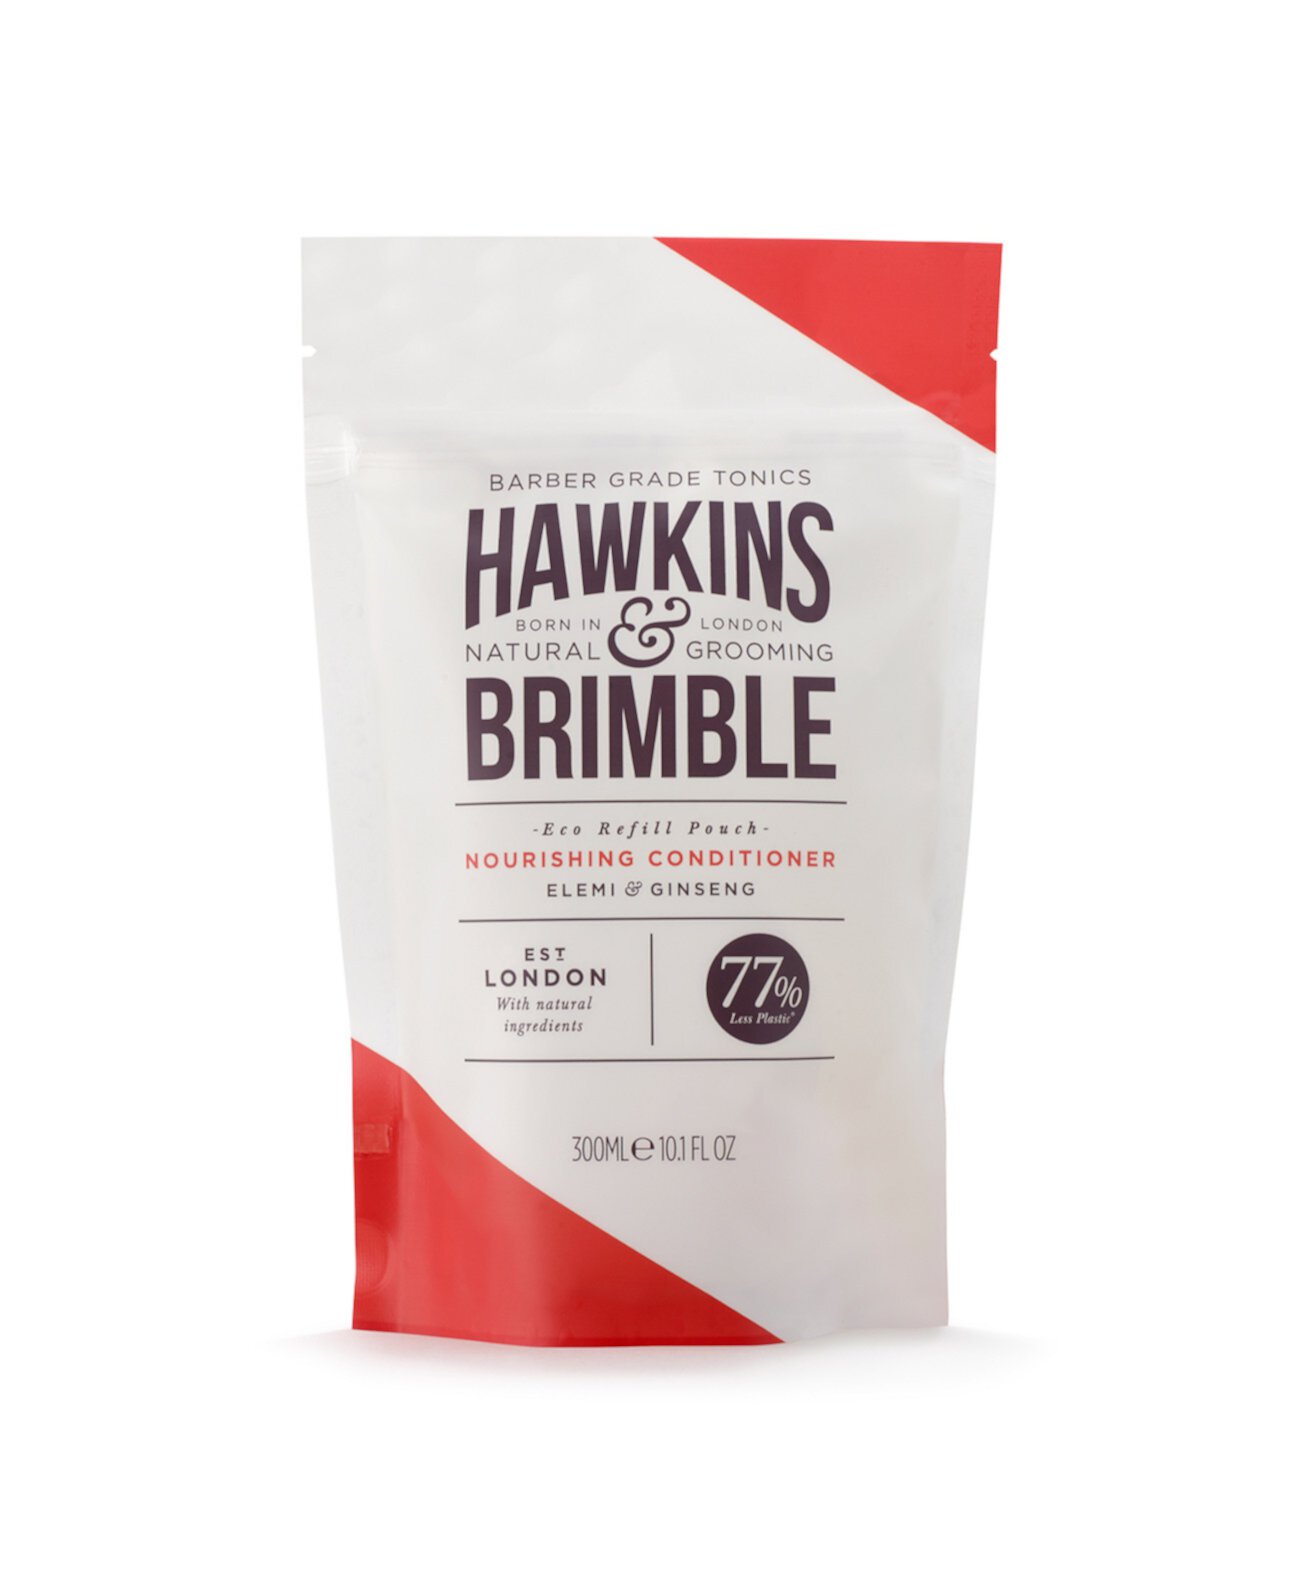 Питательный кондиционер в пакетиках Hawkins and Brimble, 10,1 жидких унций Hawkins & Brimble